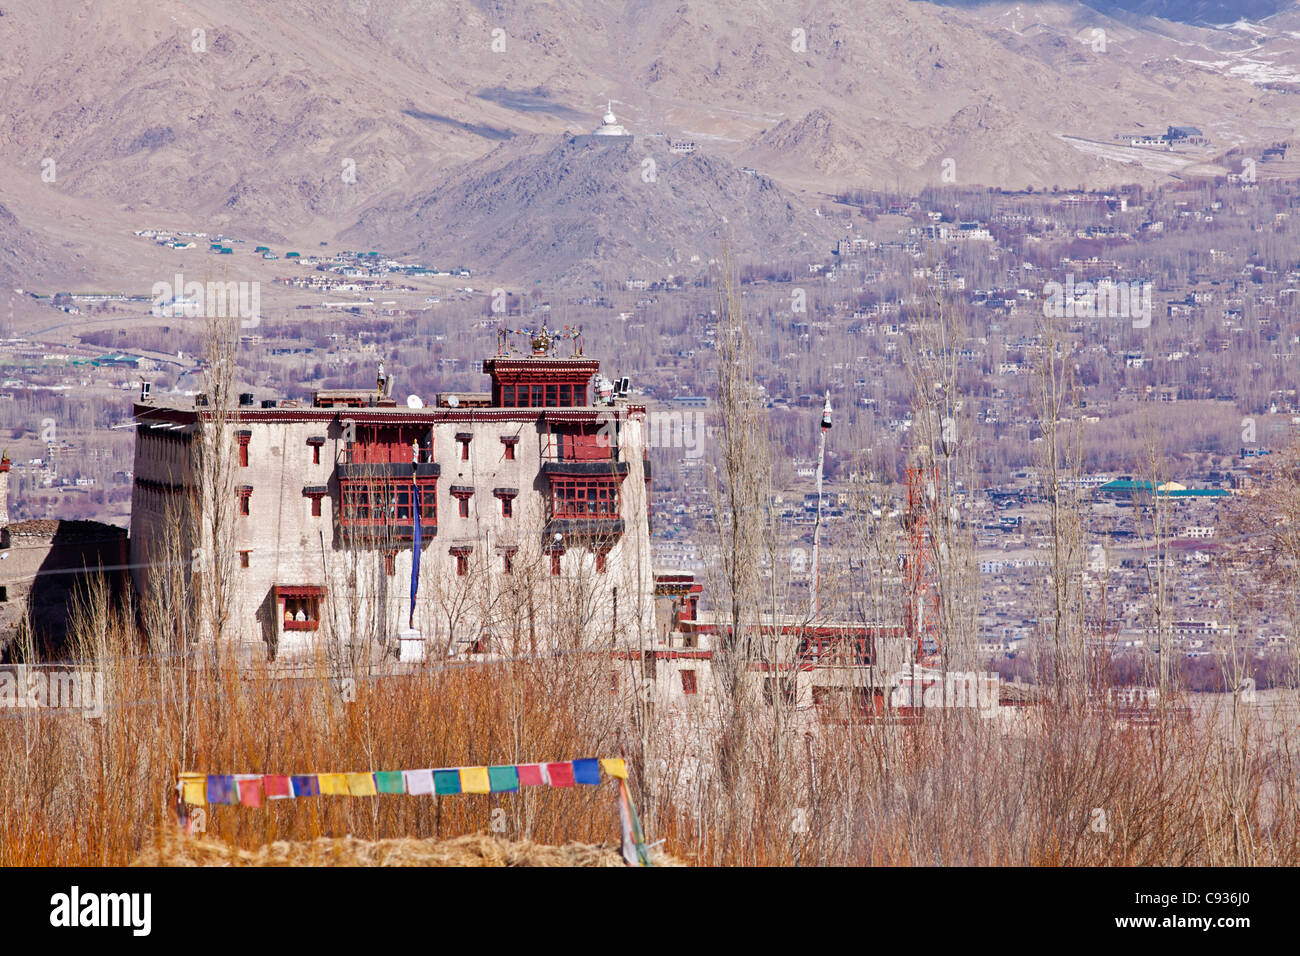 L'Inde, le Ladakh, Stok. Palais Stok, résidence de la Reine du Ladakh. Banque D'Images